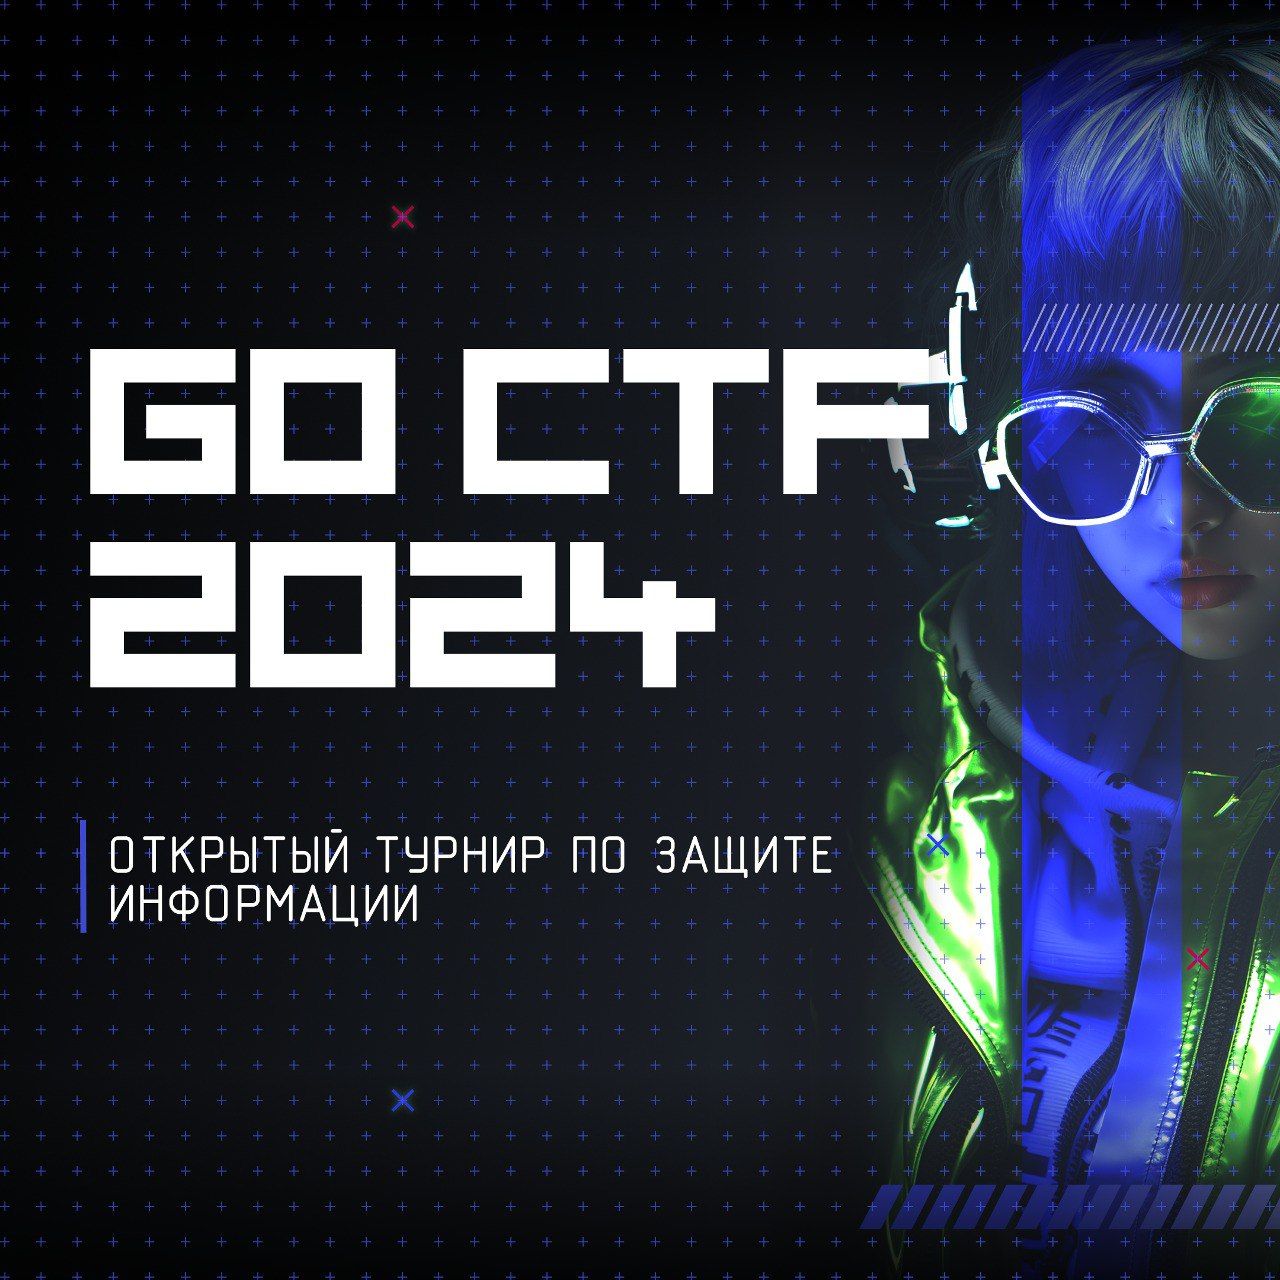 Сборная школьников из Казани победила в первом республиканском турнире по кибербезопасности